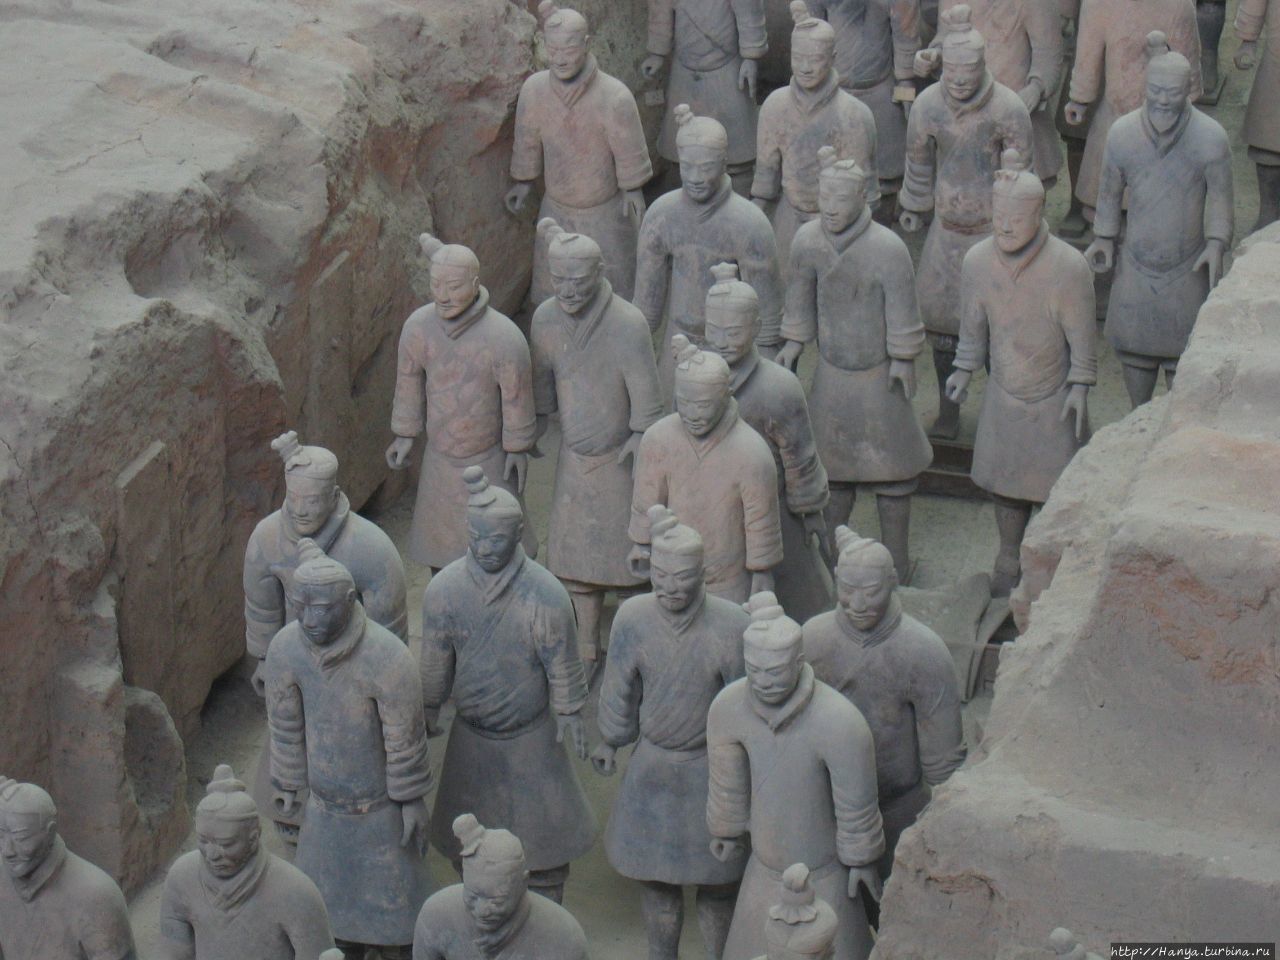 Сиань  Мавзолей императора Цинь Шихуанди и терракотовая армия Сиань, Китай